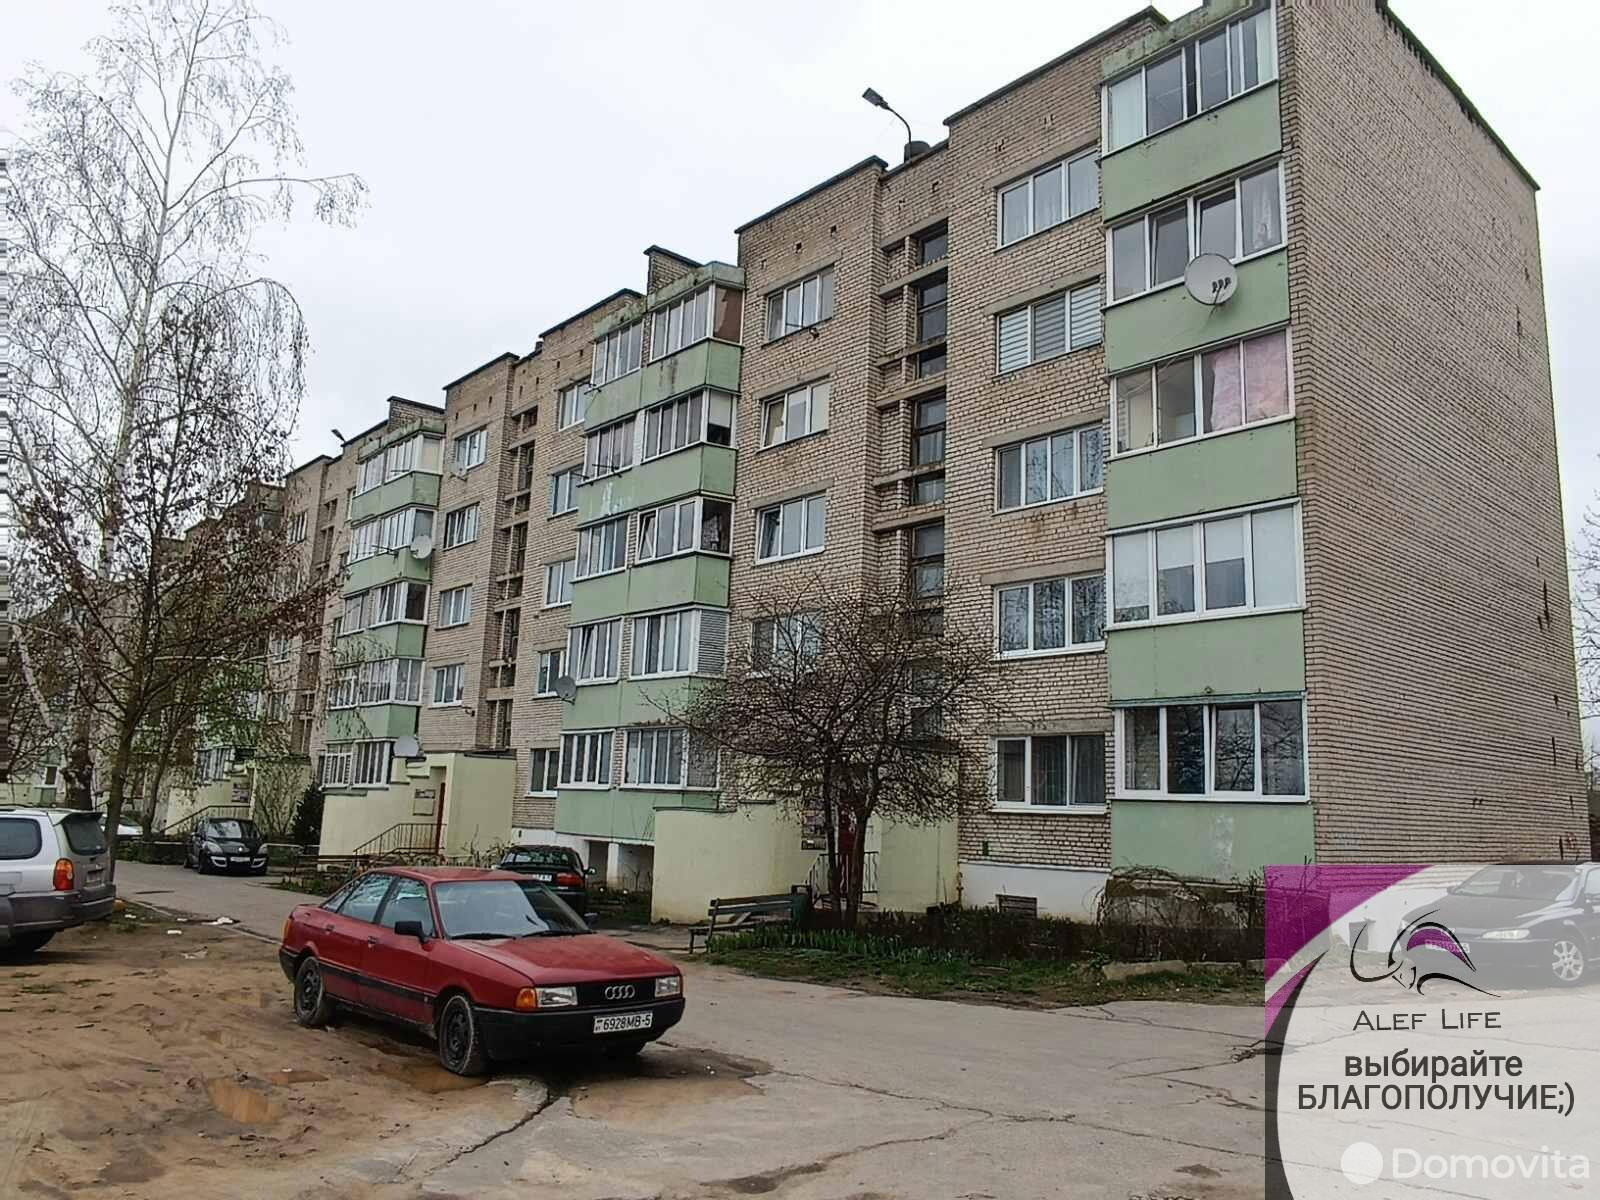 квартира, Смолевичи, ул. Социалистическая, д. 39, стоимость продажи 116 738 р.